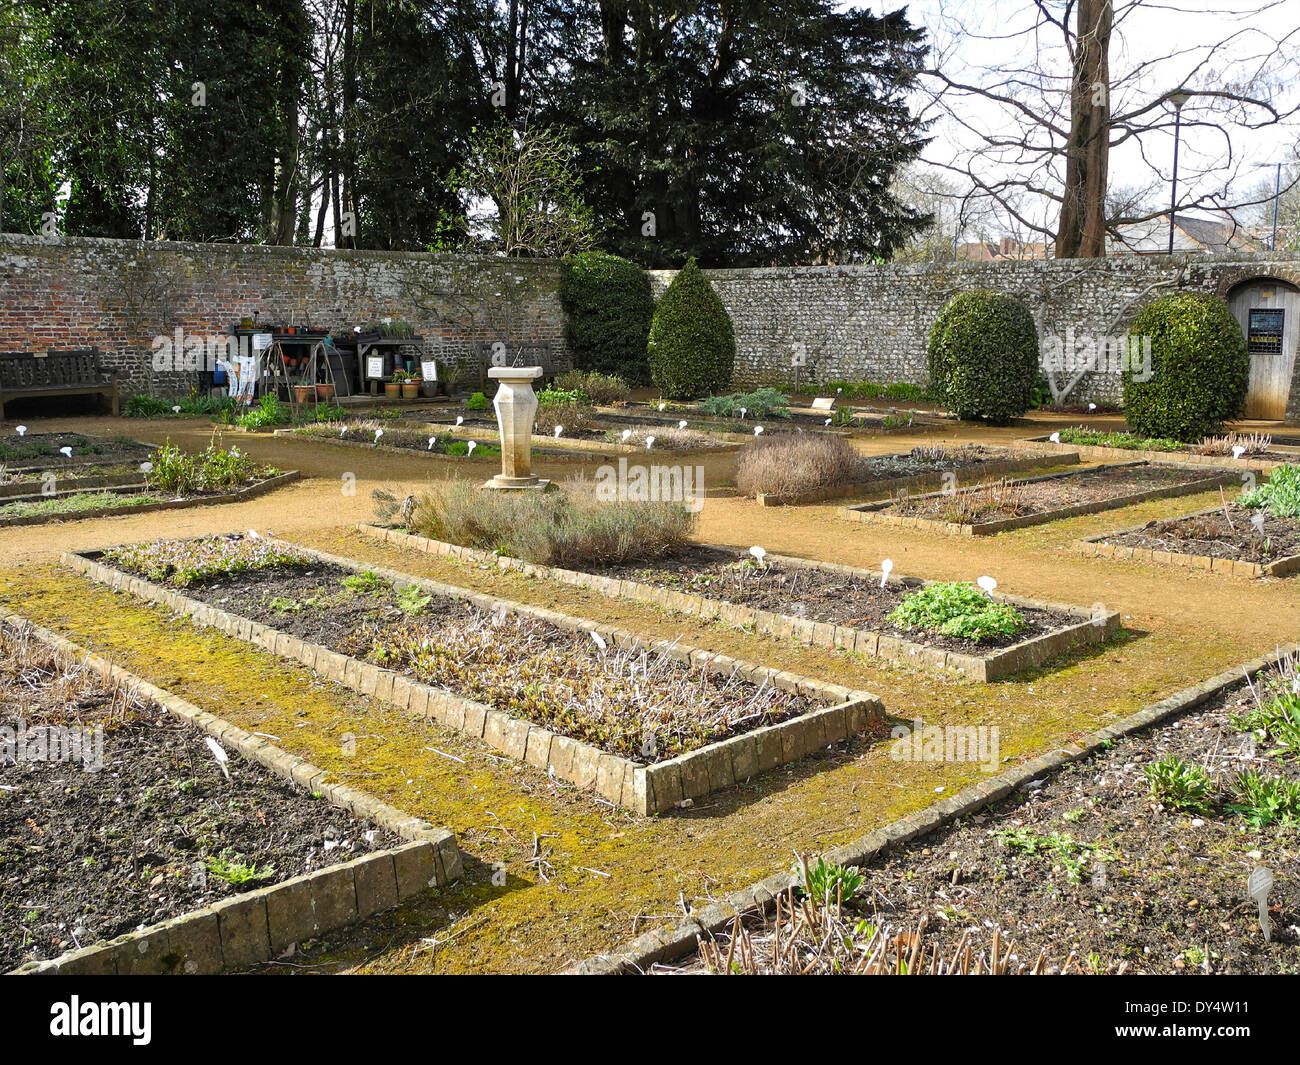 Petersfield Physic Gardens Jardín en Petersfield, Hampshire contiene una gran colección de hierbas culinarias y medicinales y plantas. Foto de stock